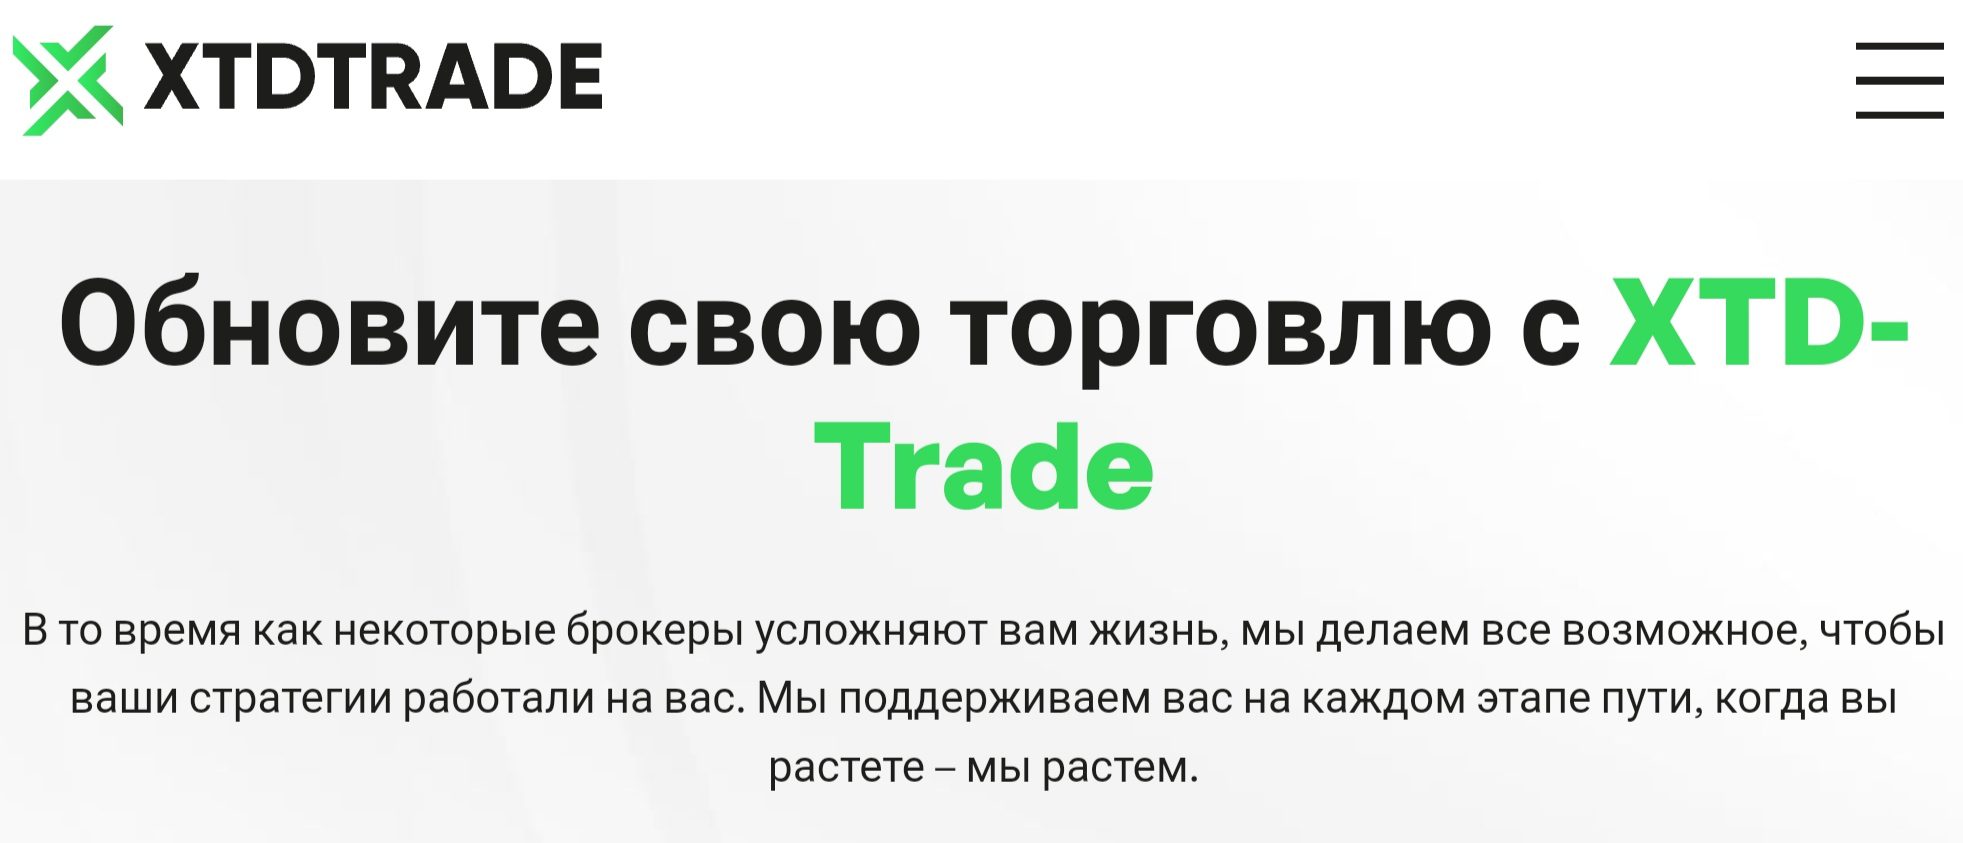 Xtd trade com trade сайт